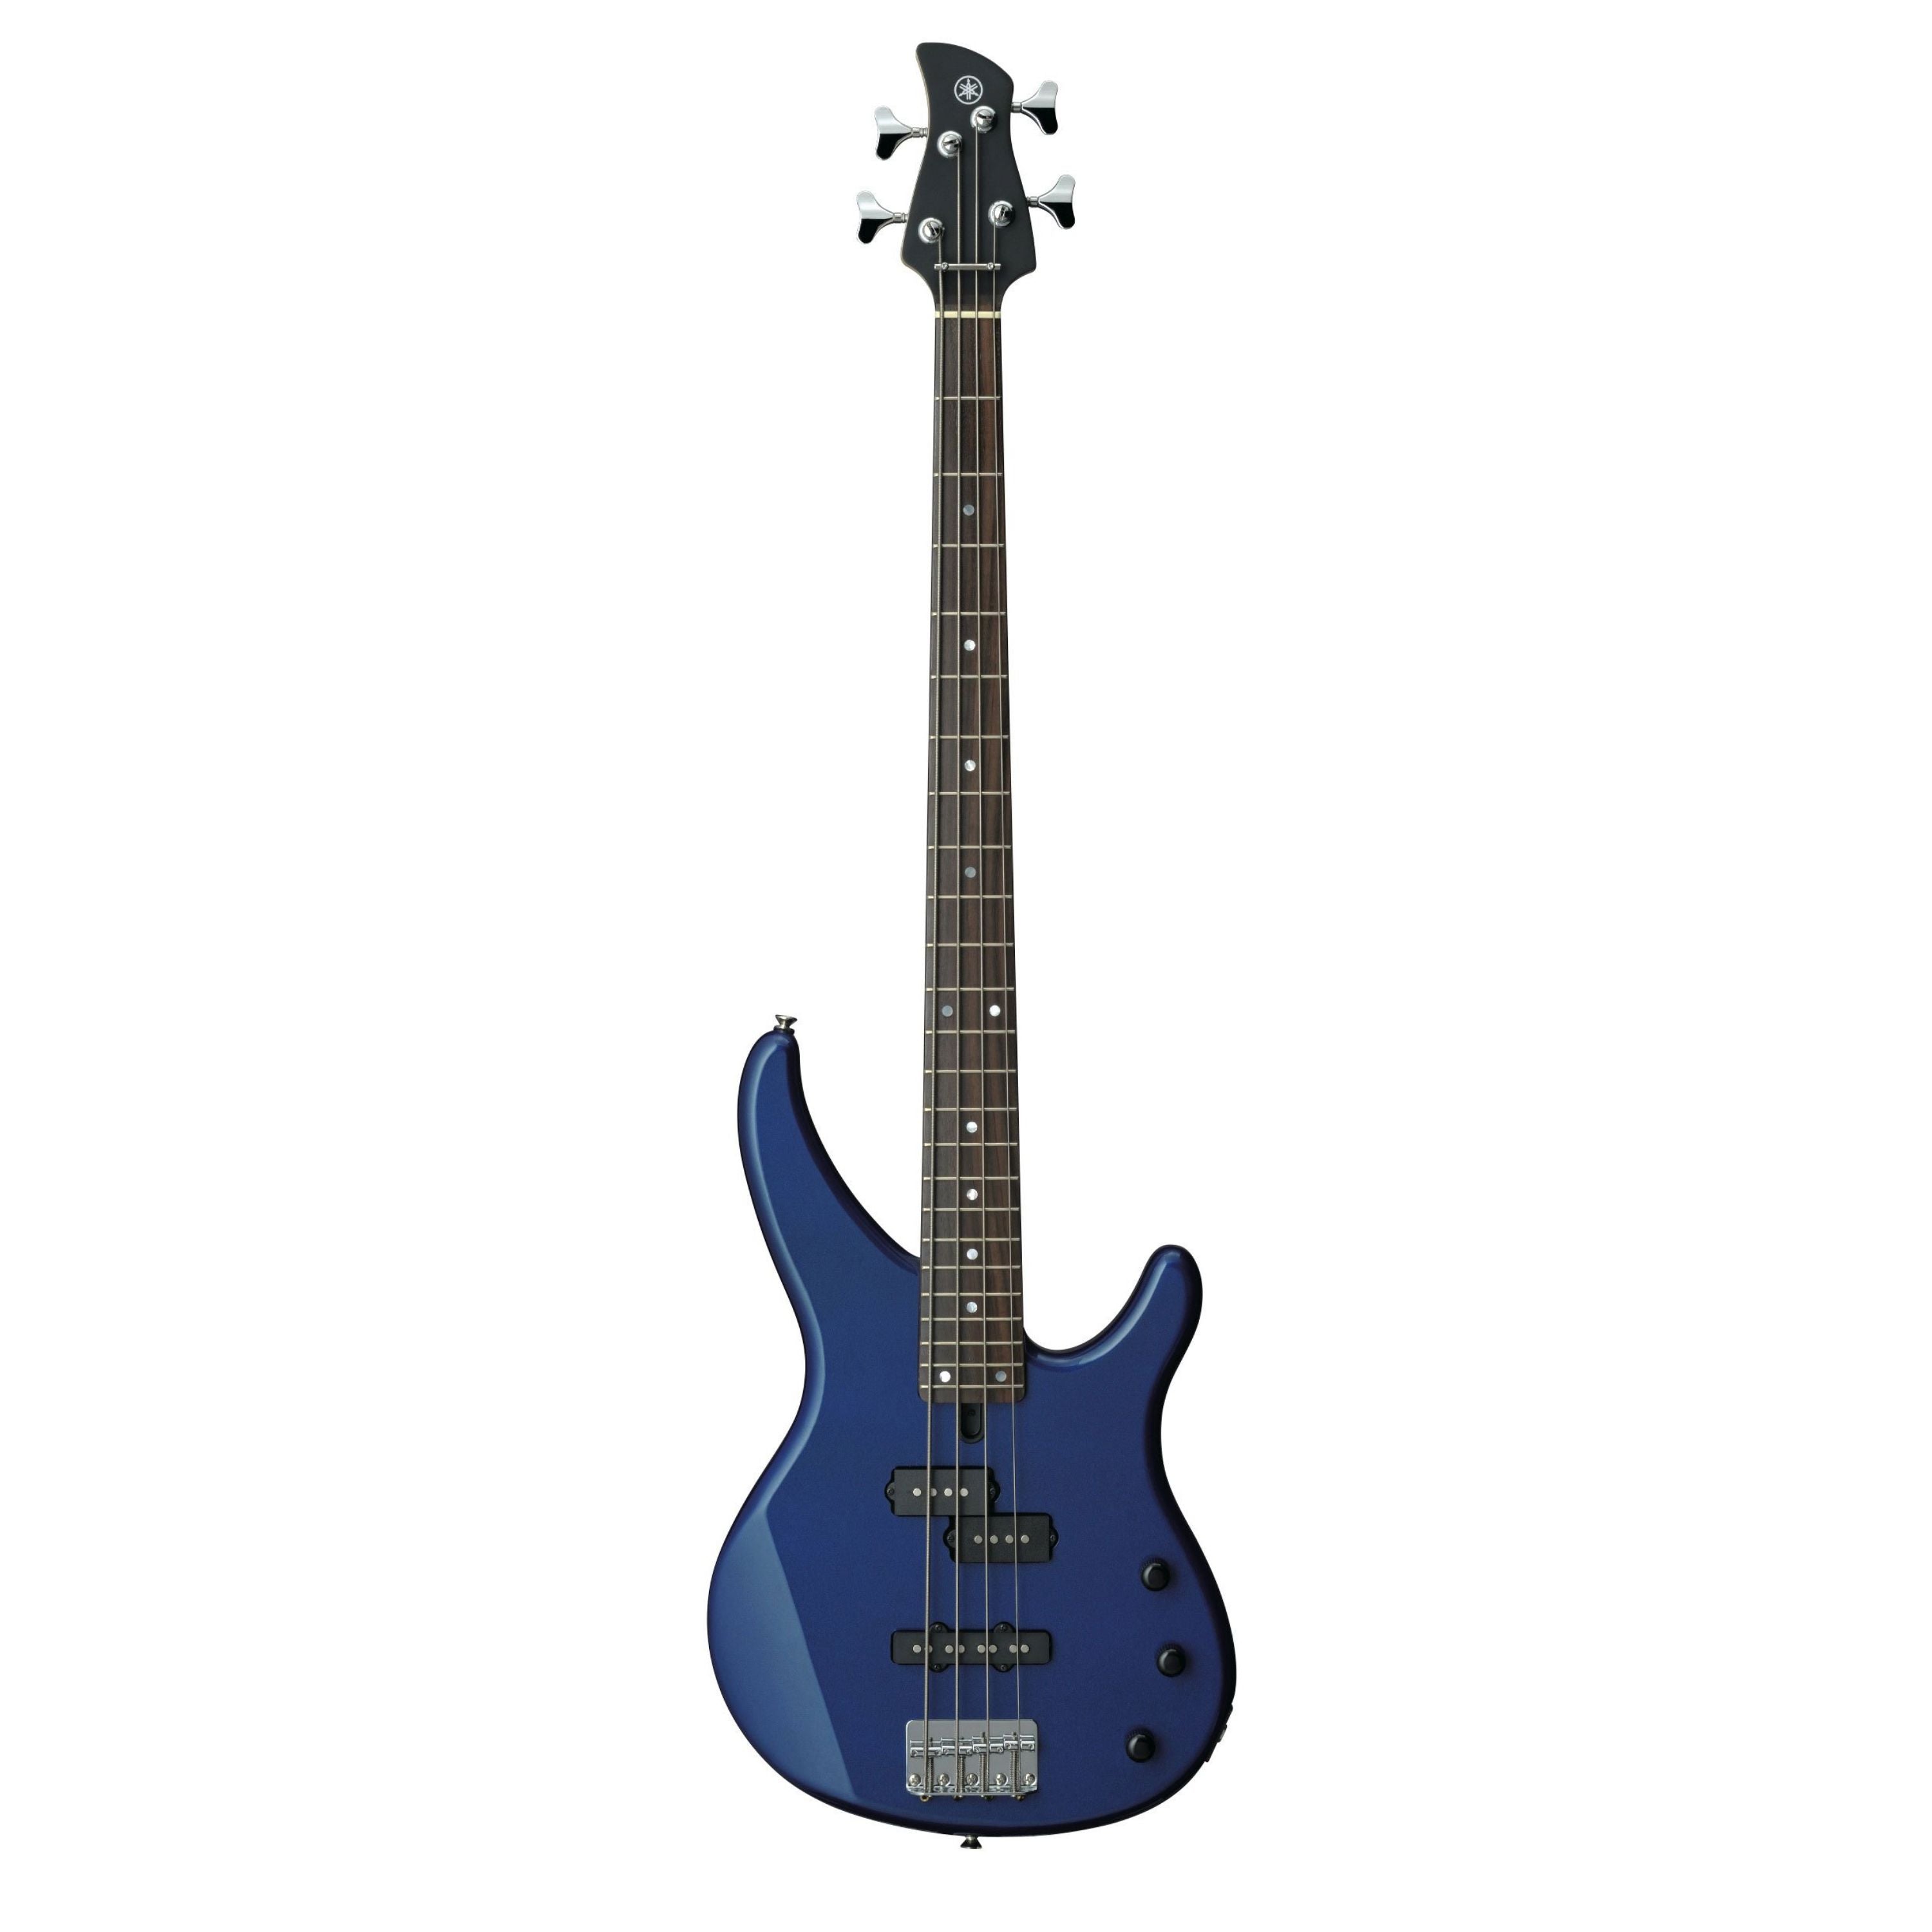 Yamaha TRBX174 Bass Guitar, Blue Metallic